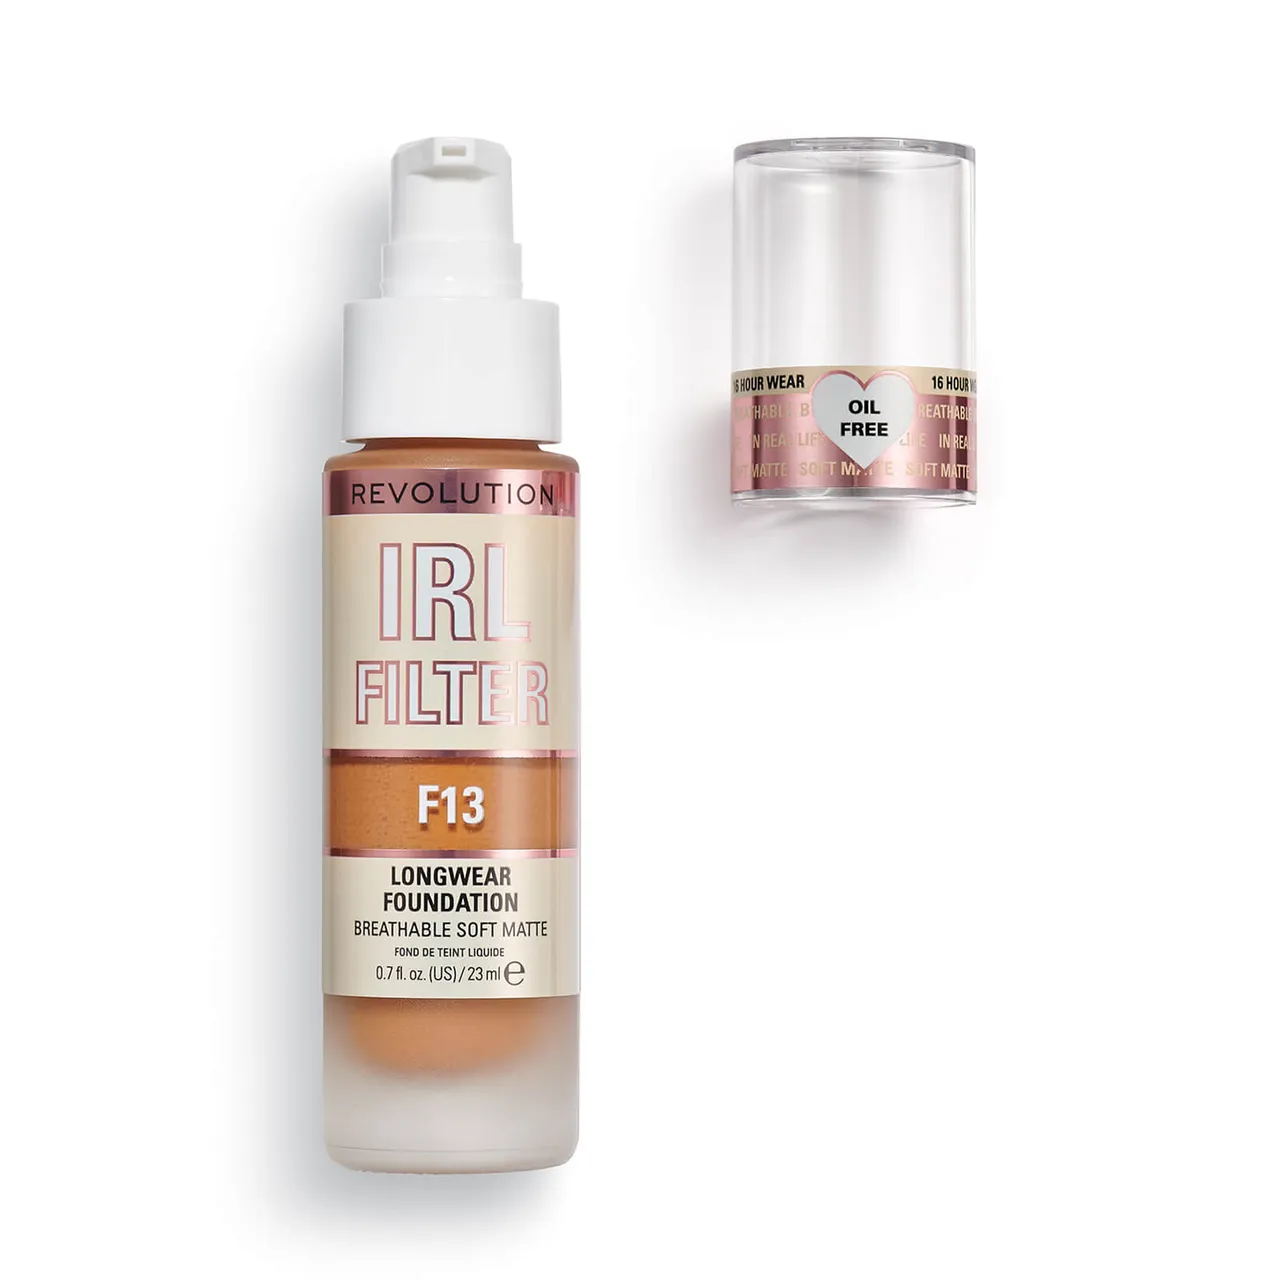 Makeup Revolution IRL Filter Longwear Foundation 23ml (Various Shades) - F13